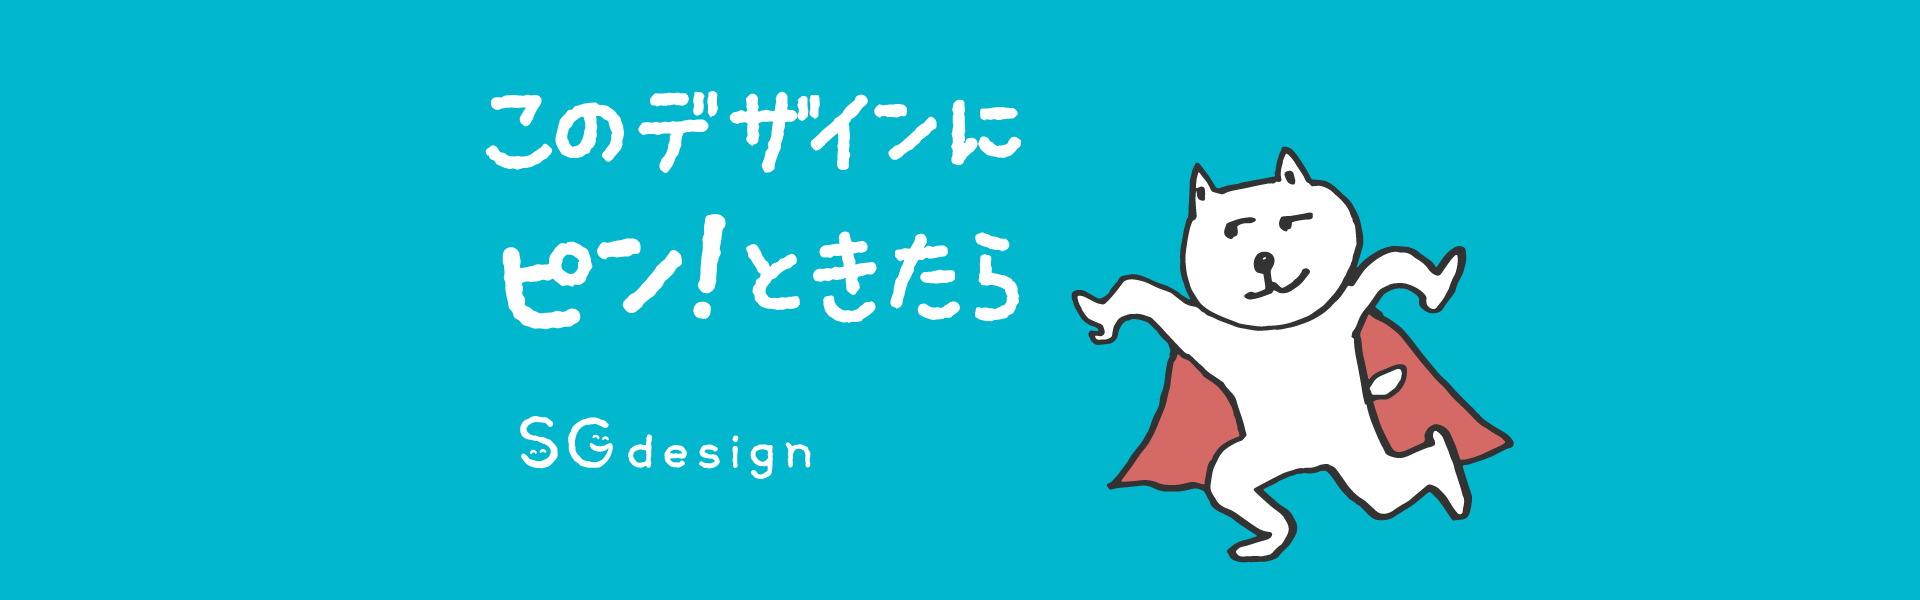 飯田市 デザイン SGdesign